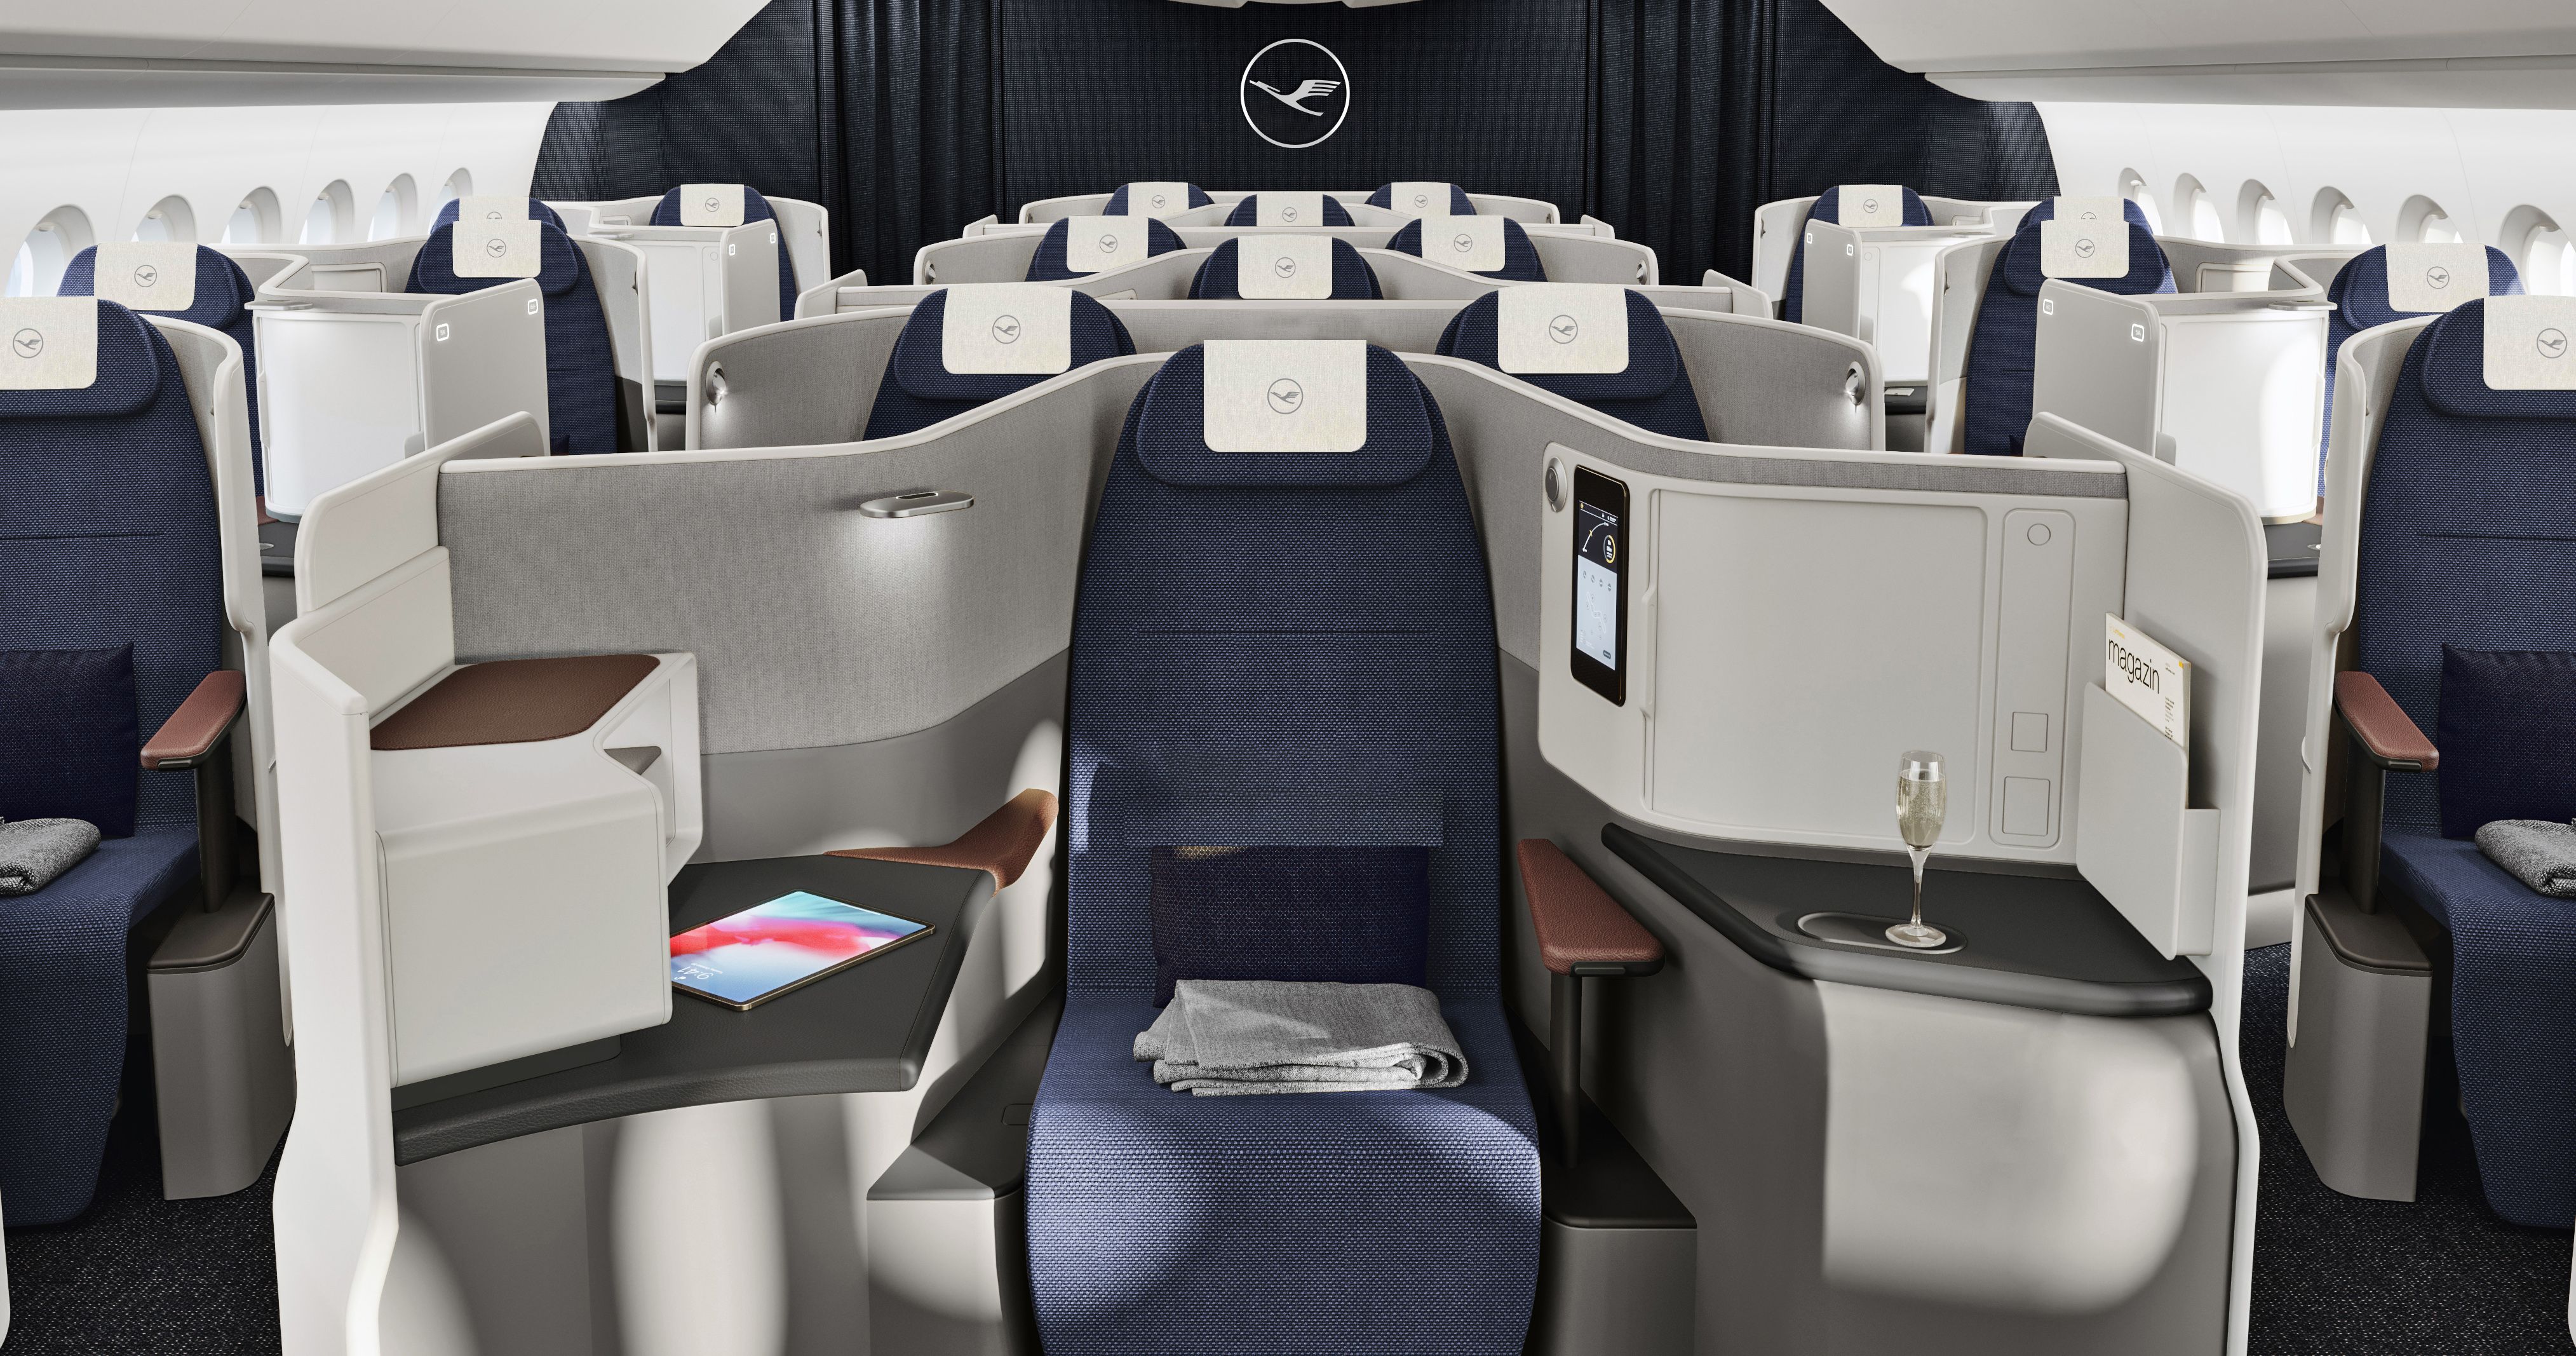 Lufthansa new business class cabin